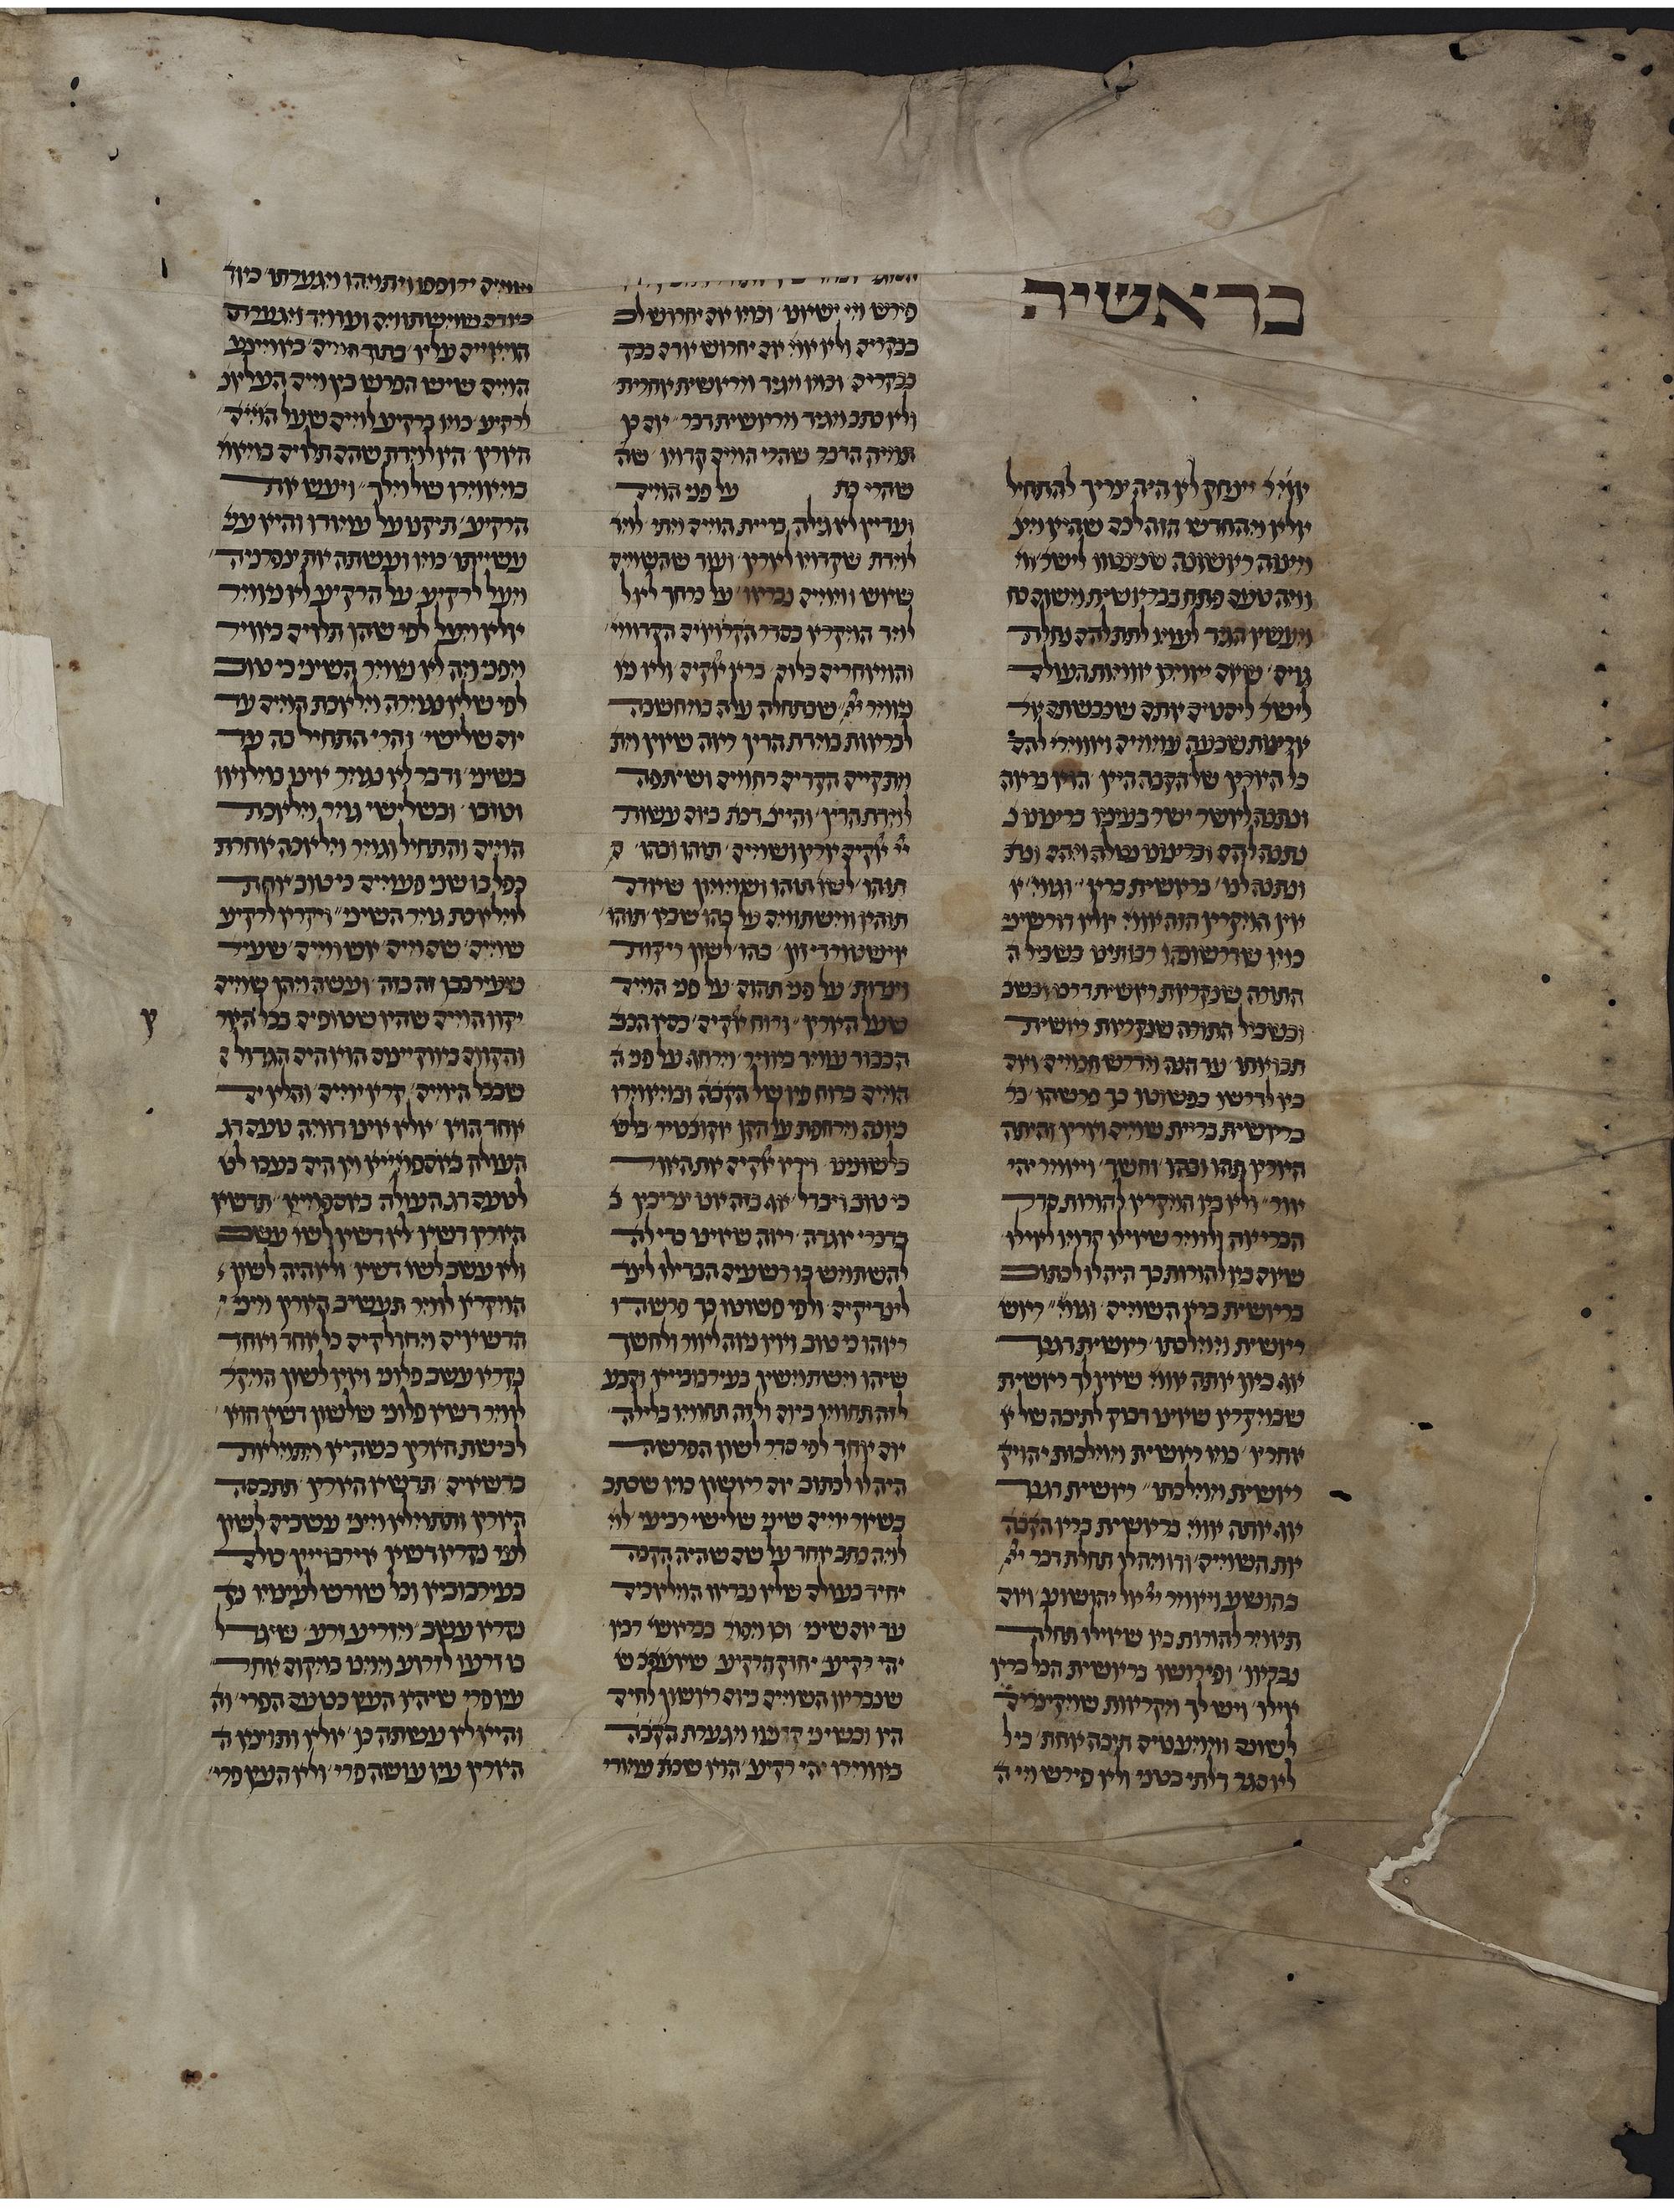 Ms. or. fol. 1221, fol. 1r, erstes Blatt